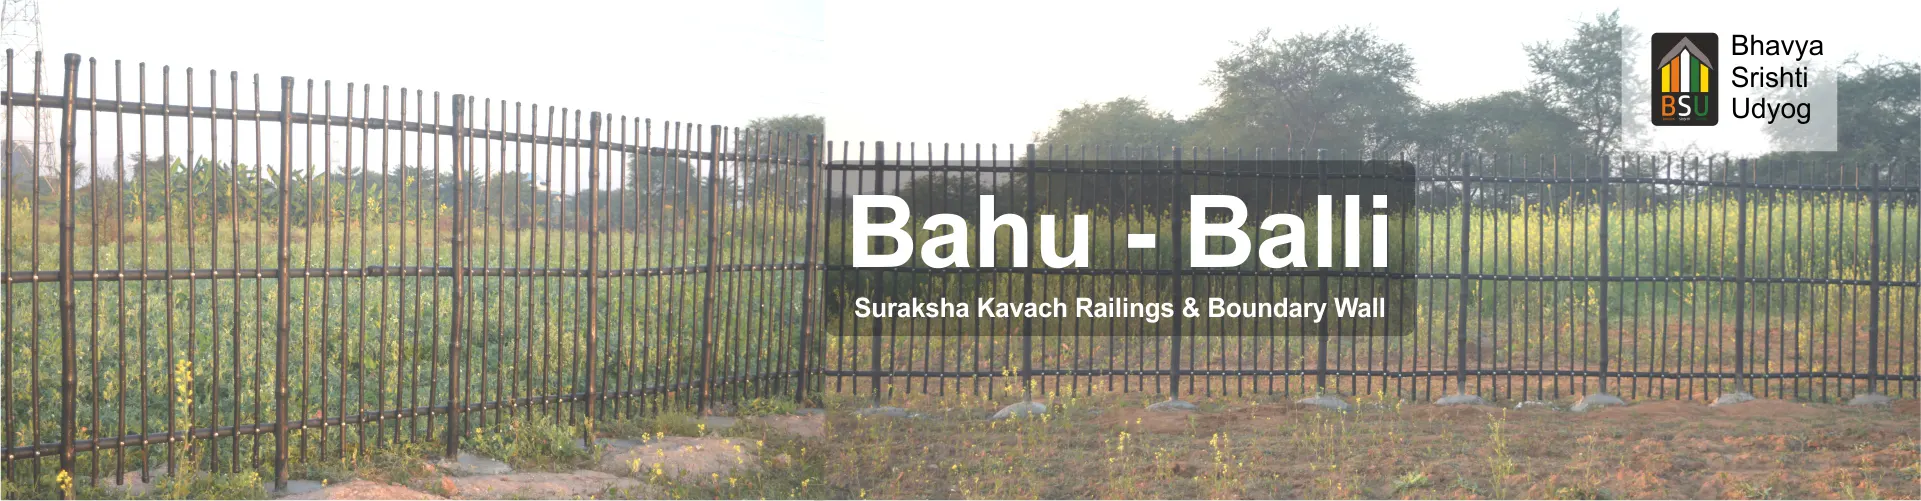 Bhavya Srishti Udyog Pvt. Ltd, Railings and Boundary Wall, Boundary Wall Railing, Boundary Railings, Suraksha Kavach, Bahu-Balli Suraksha Kavach Railings and Boundary Wall